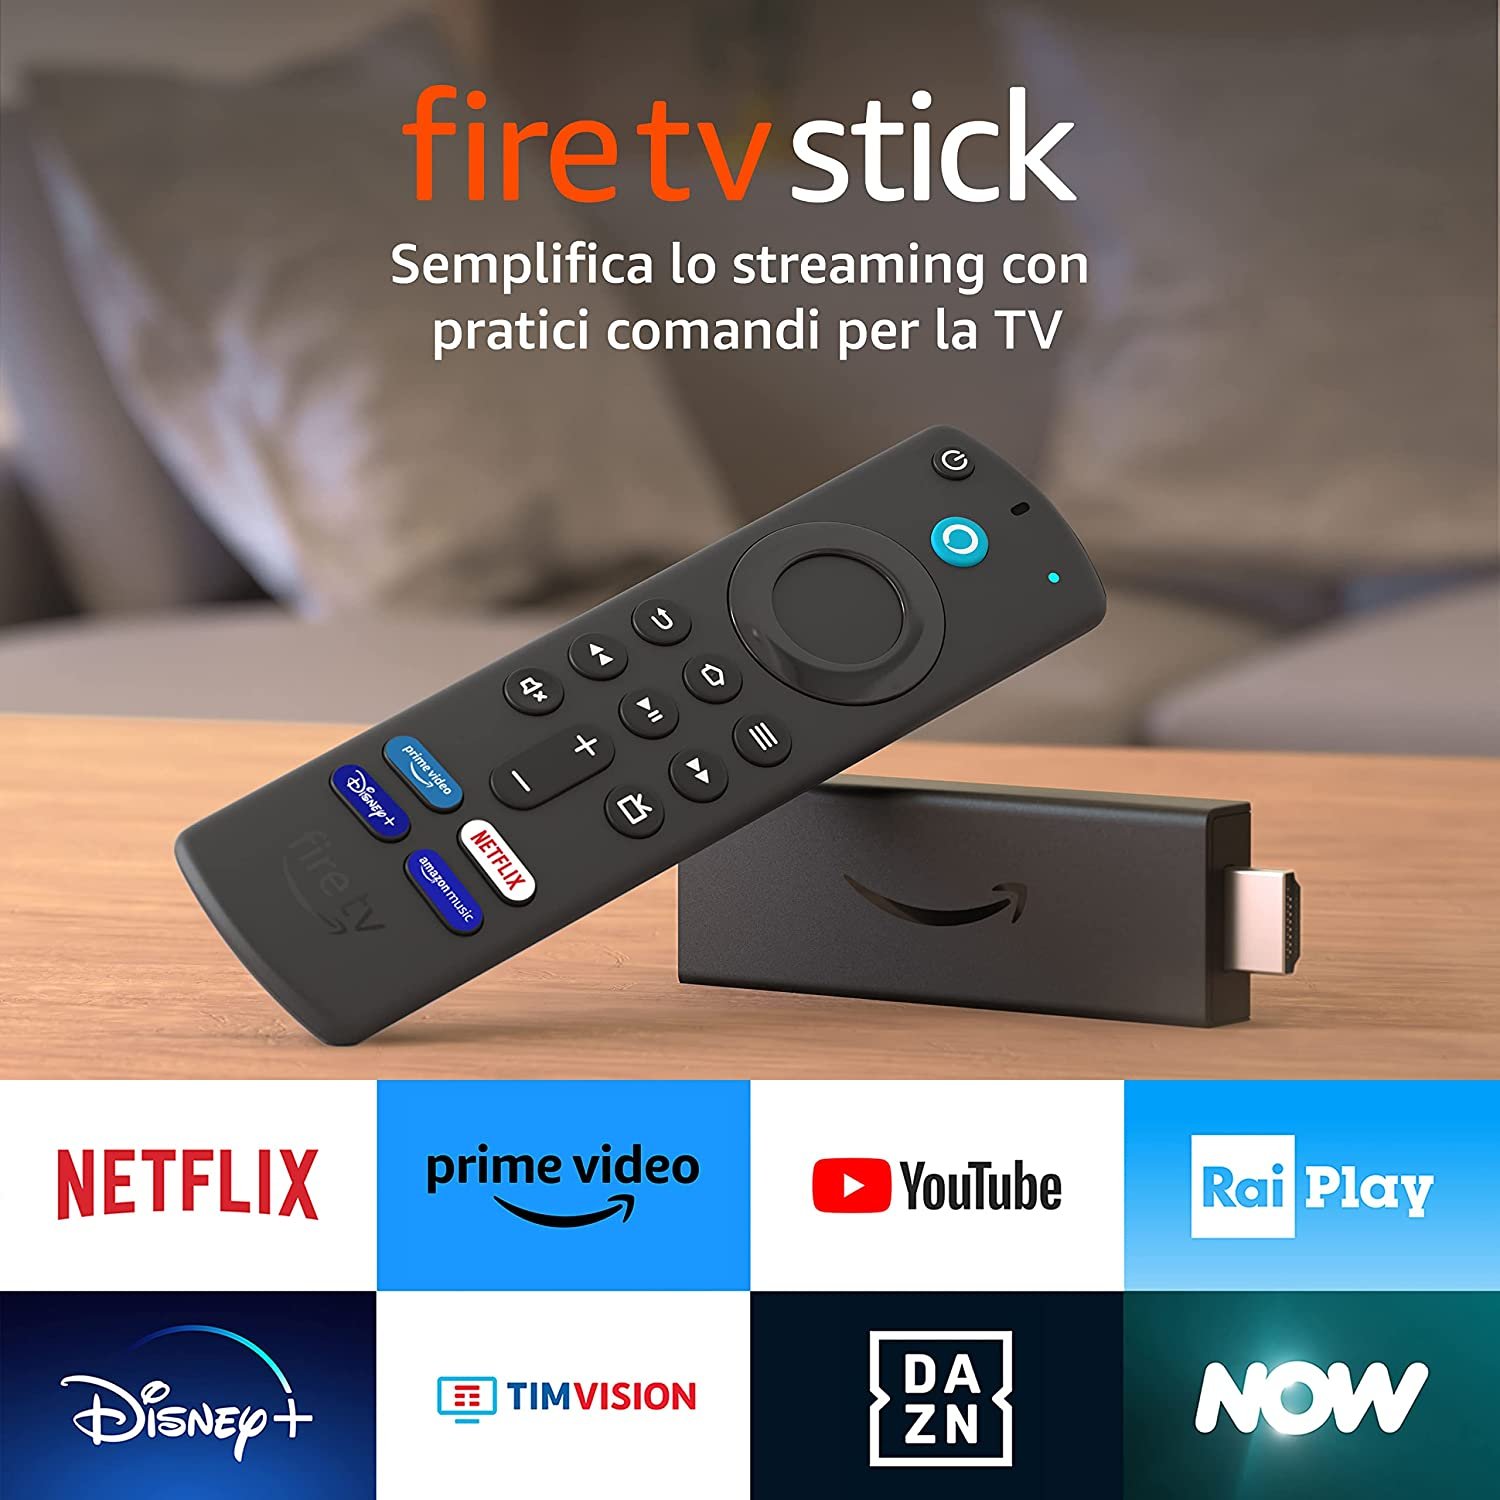 In offerta il nuovo Fire TV Stick di Amazon a soli 24,99 euro